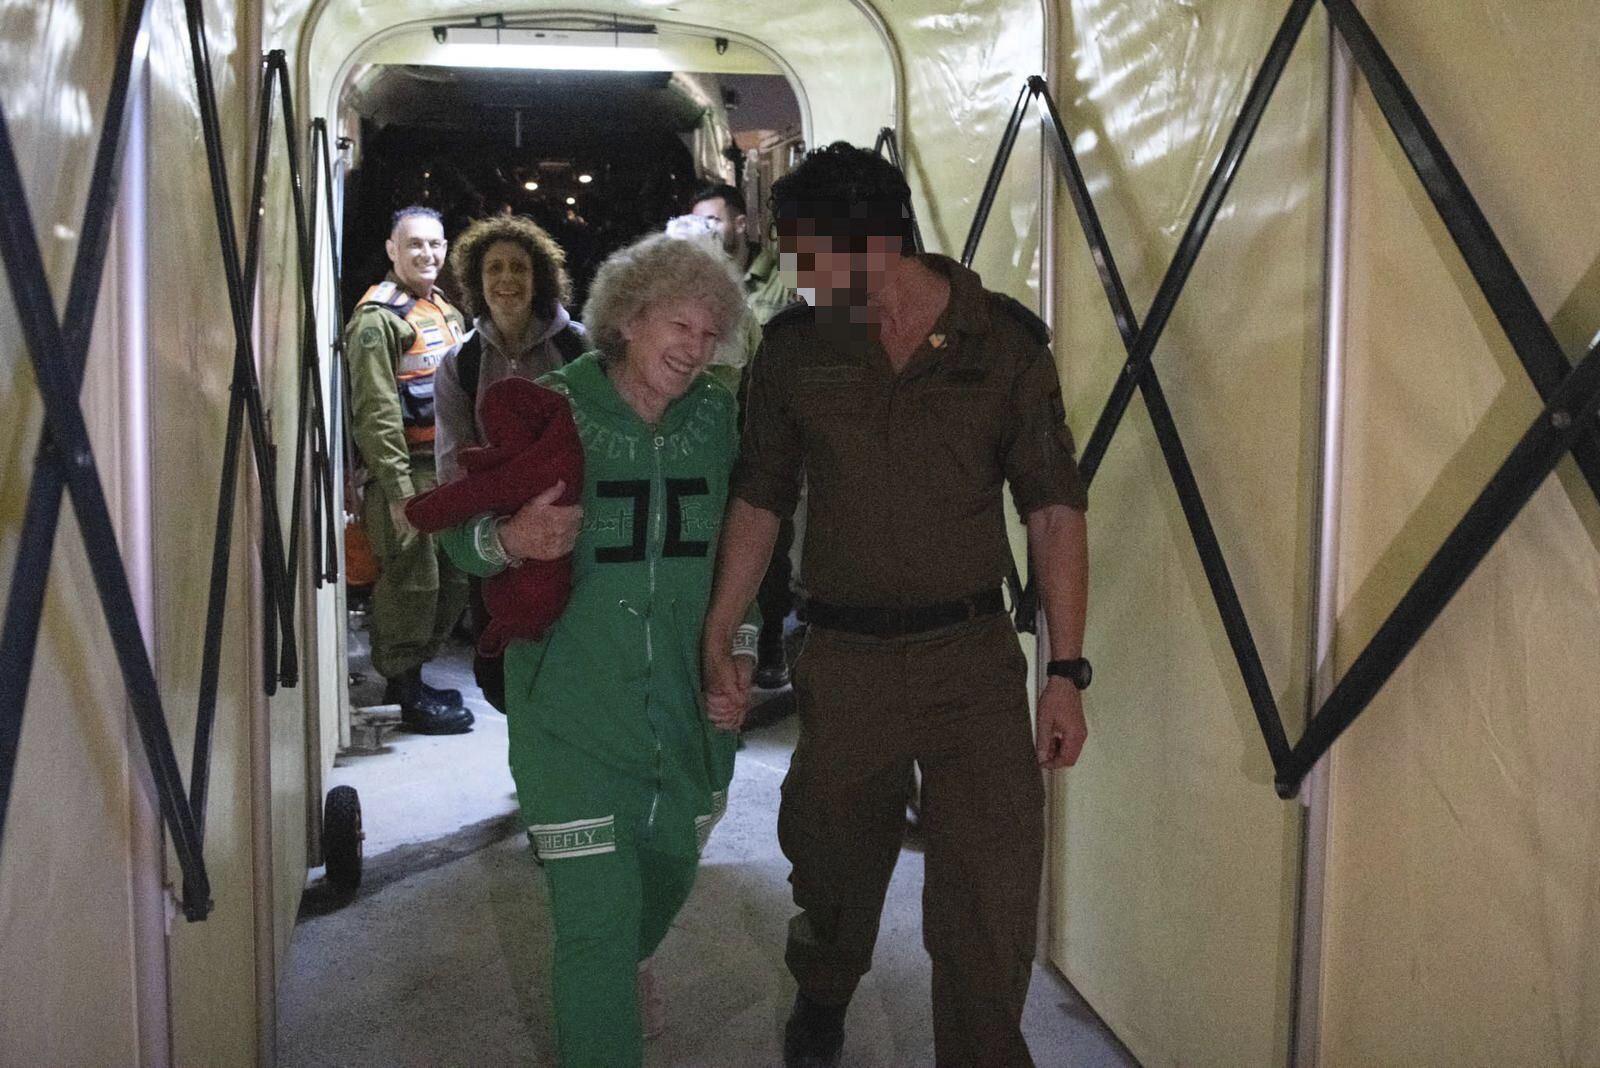 Israele, il racconto dell'ostaggio: "Chiusi in una stanza soffocante, avevamo fame"